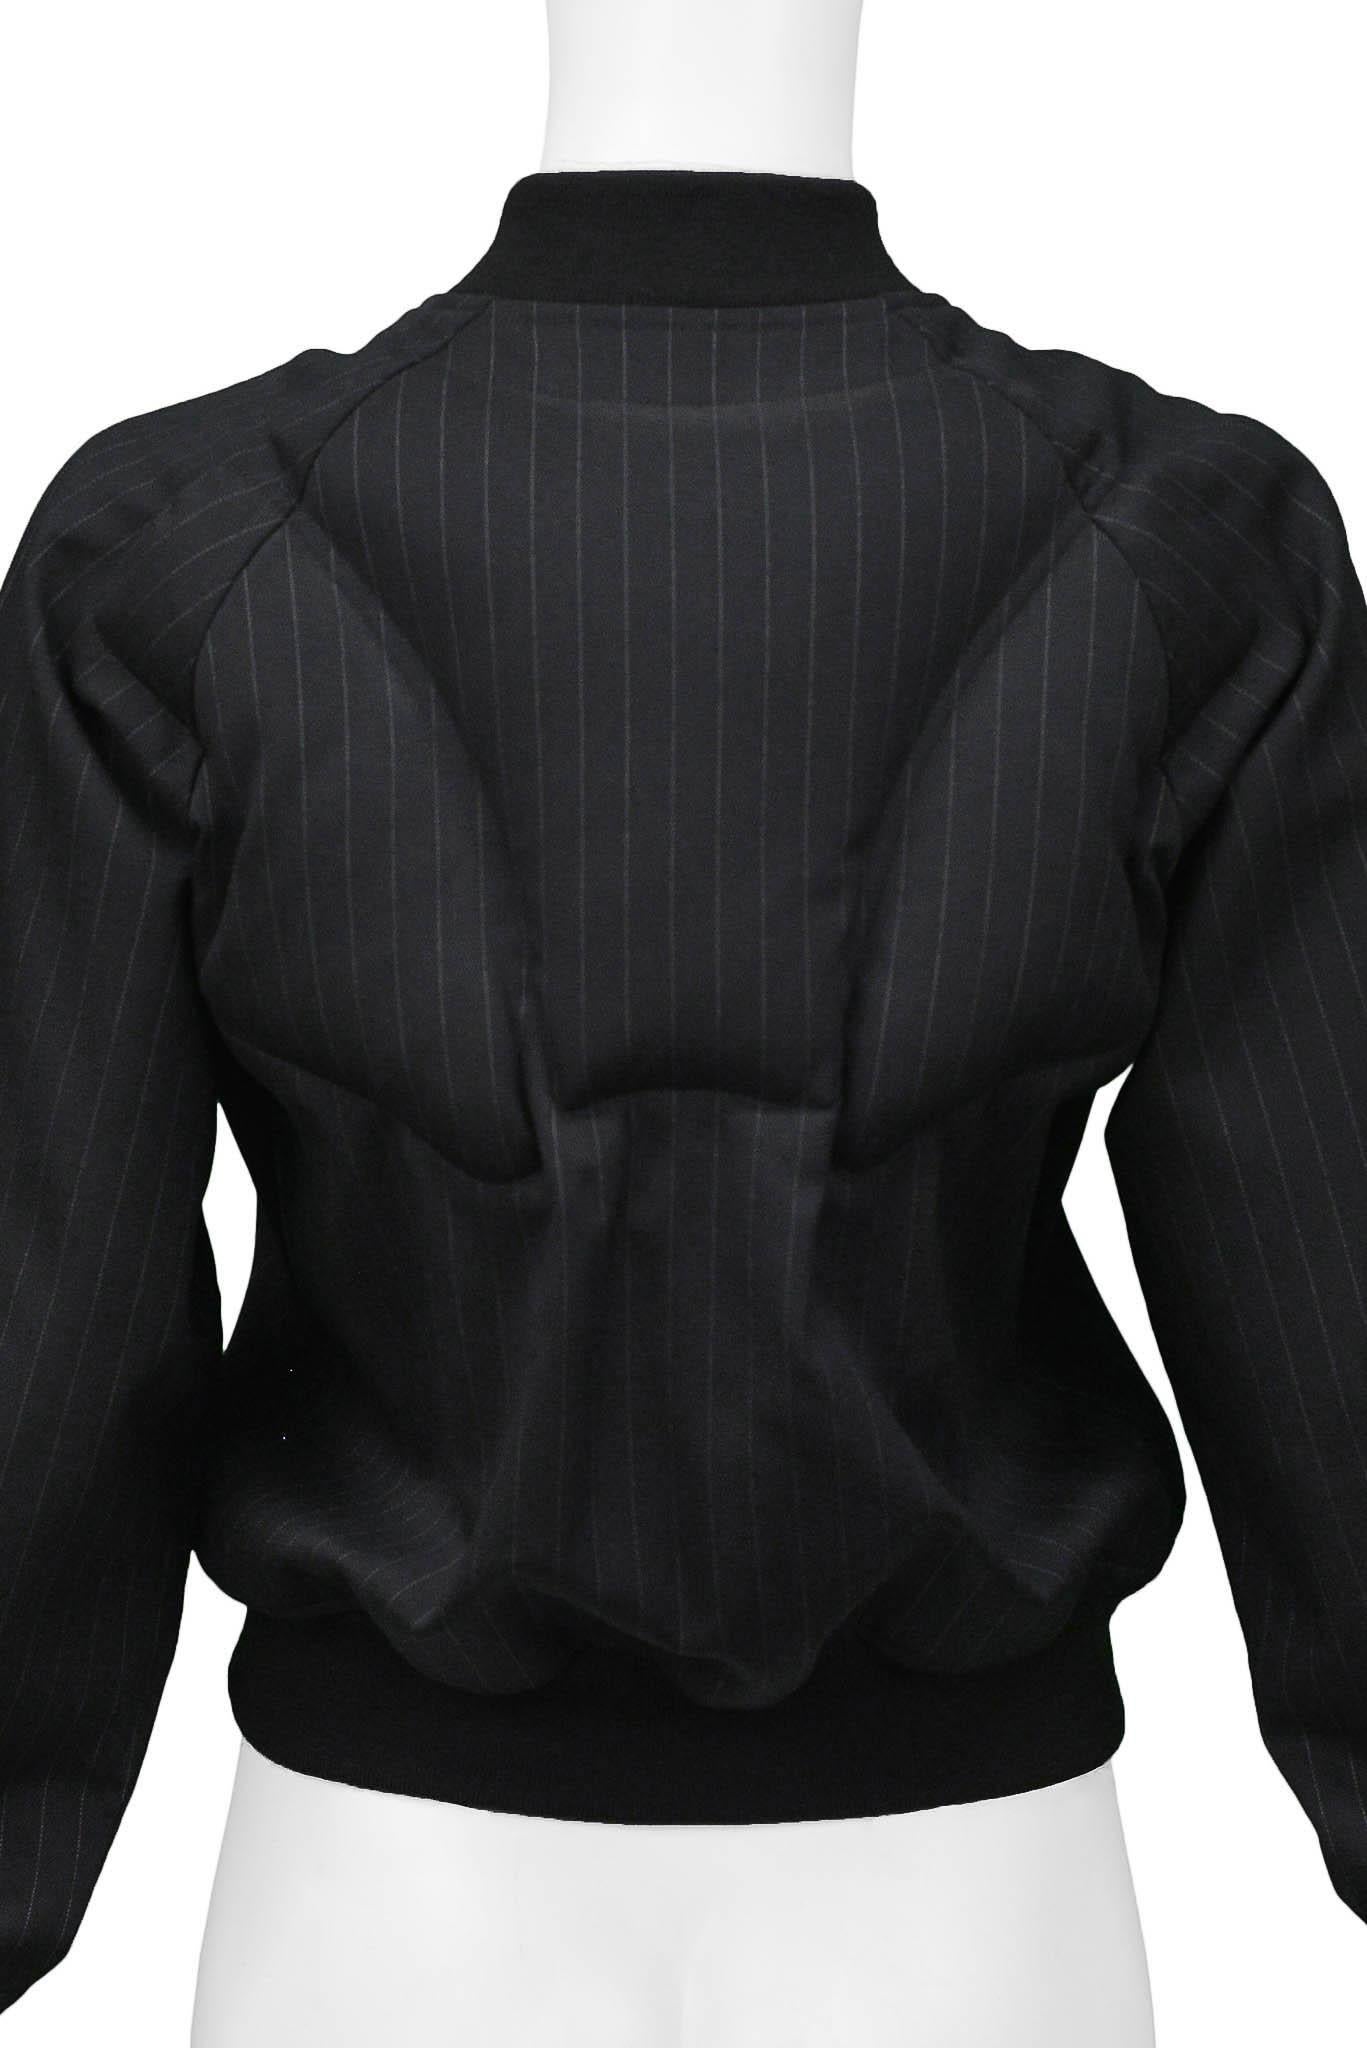 Comme Des Garcons Black Padded Pinstripe Jacket 2010 For Sale 2